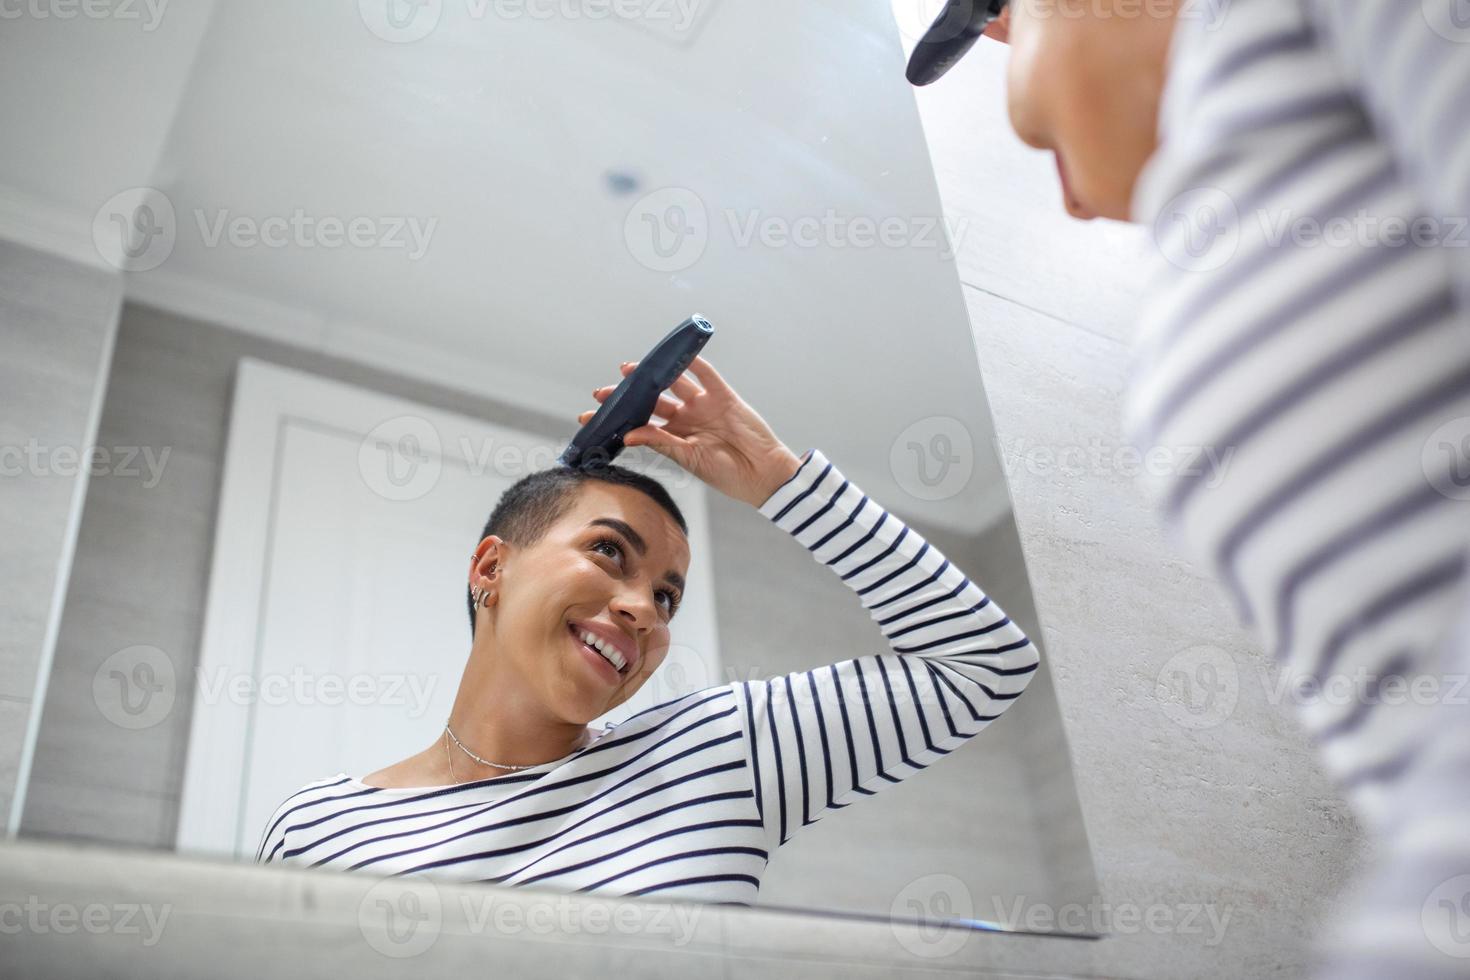 spiegel reflectie van kort haren vrouw in tank top gebruik makend van haar knippen machine foto